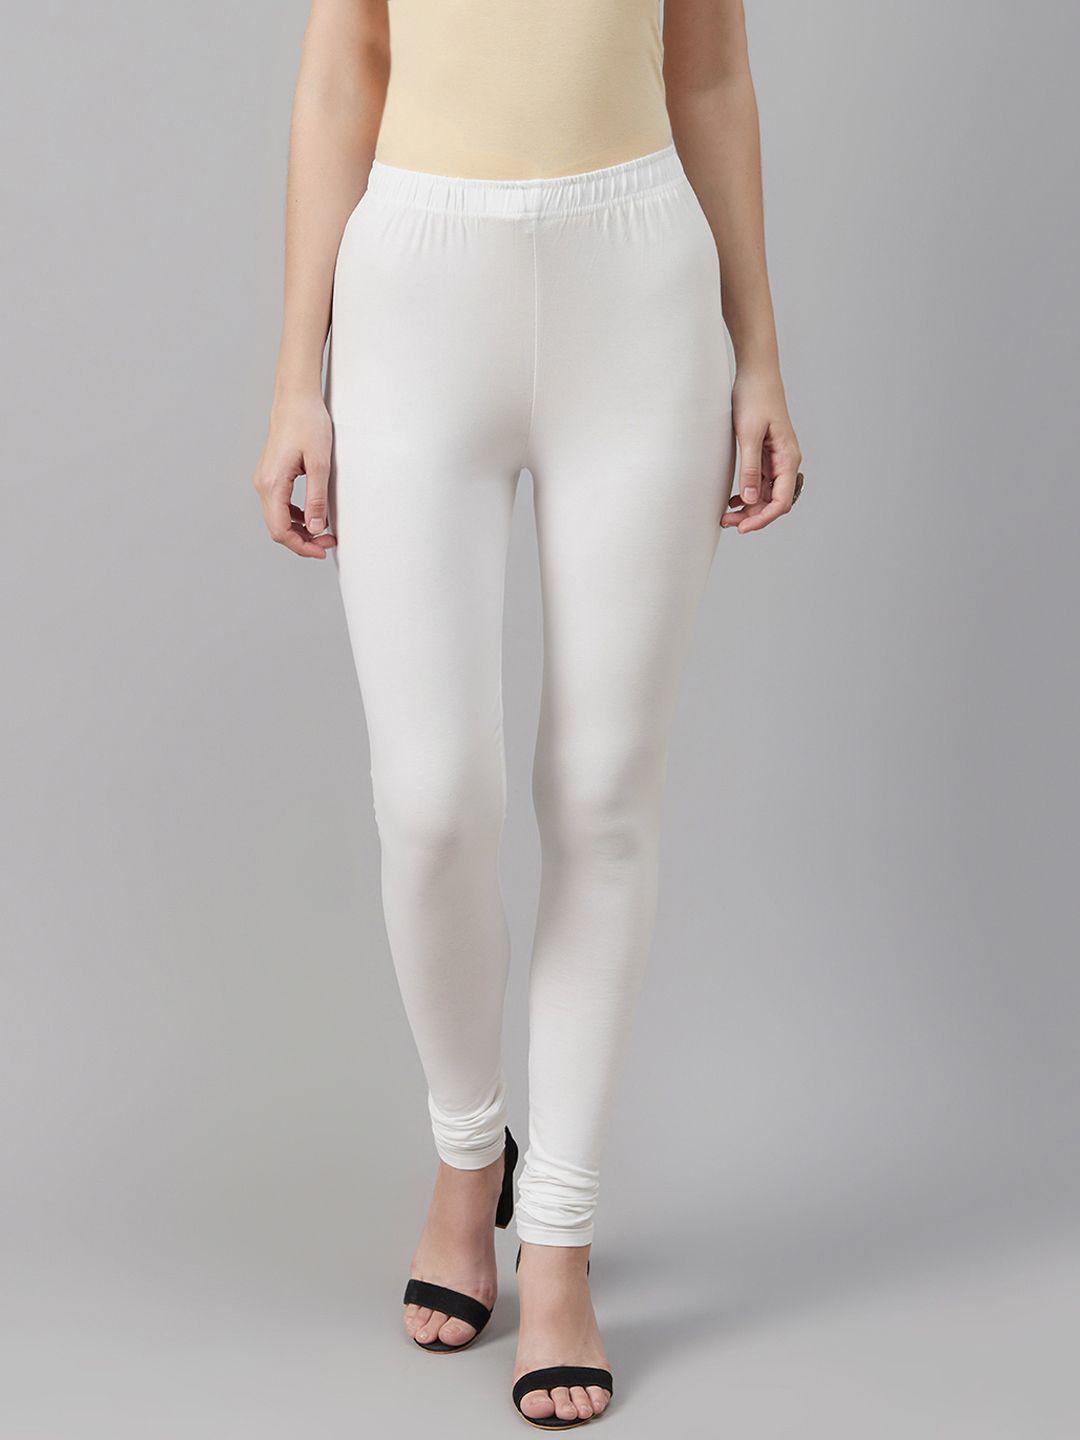 biba women white solid churidar length leggings